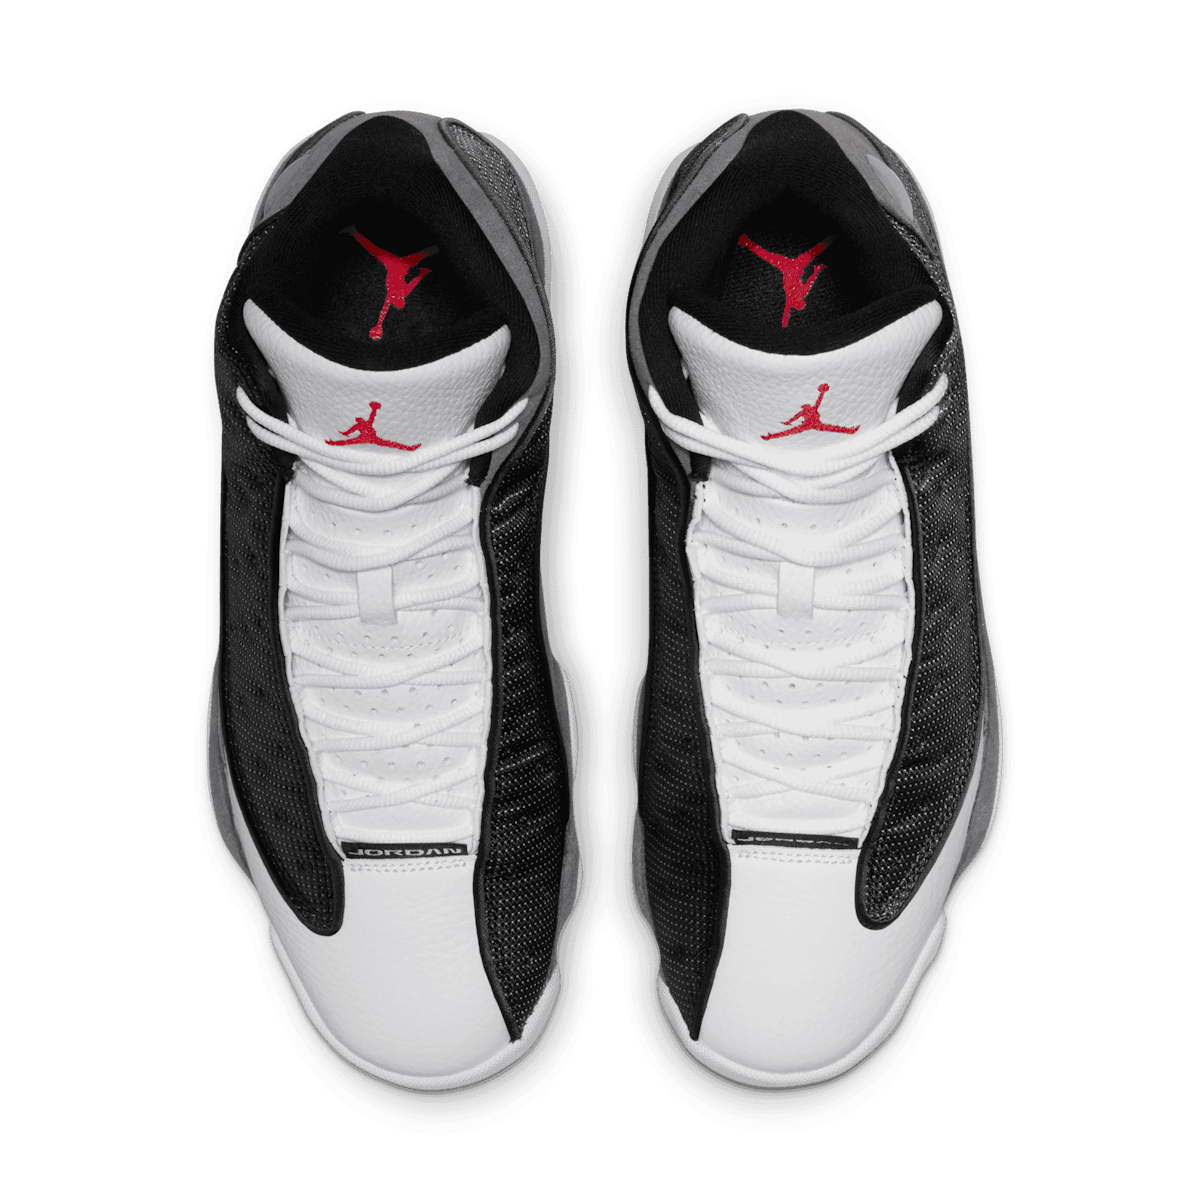 Air Jordan 13 Black Flint Angle 1